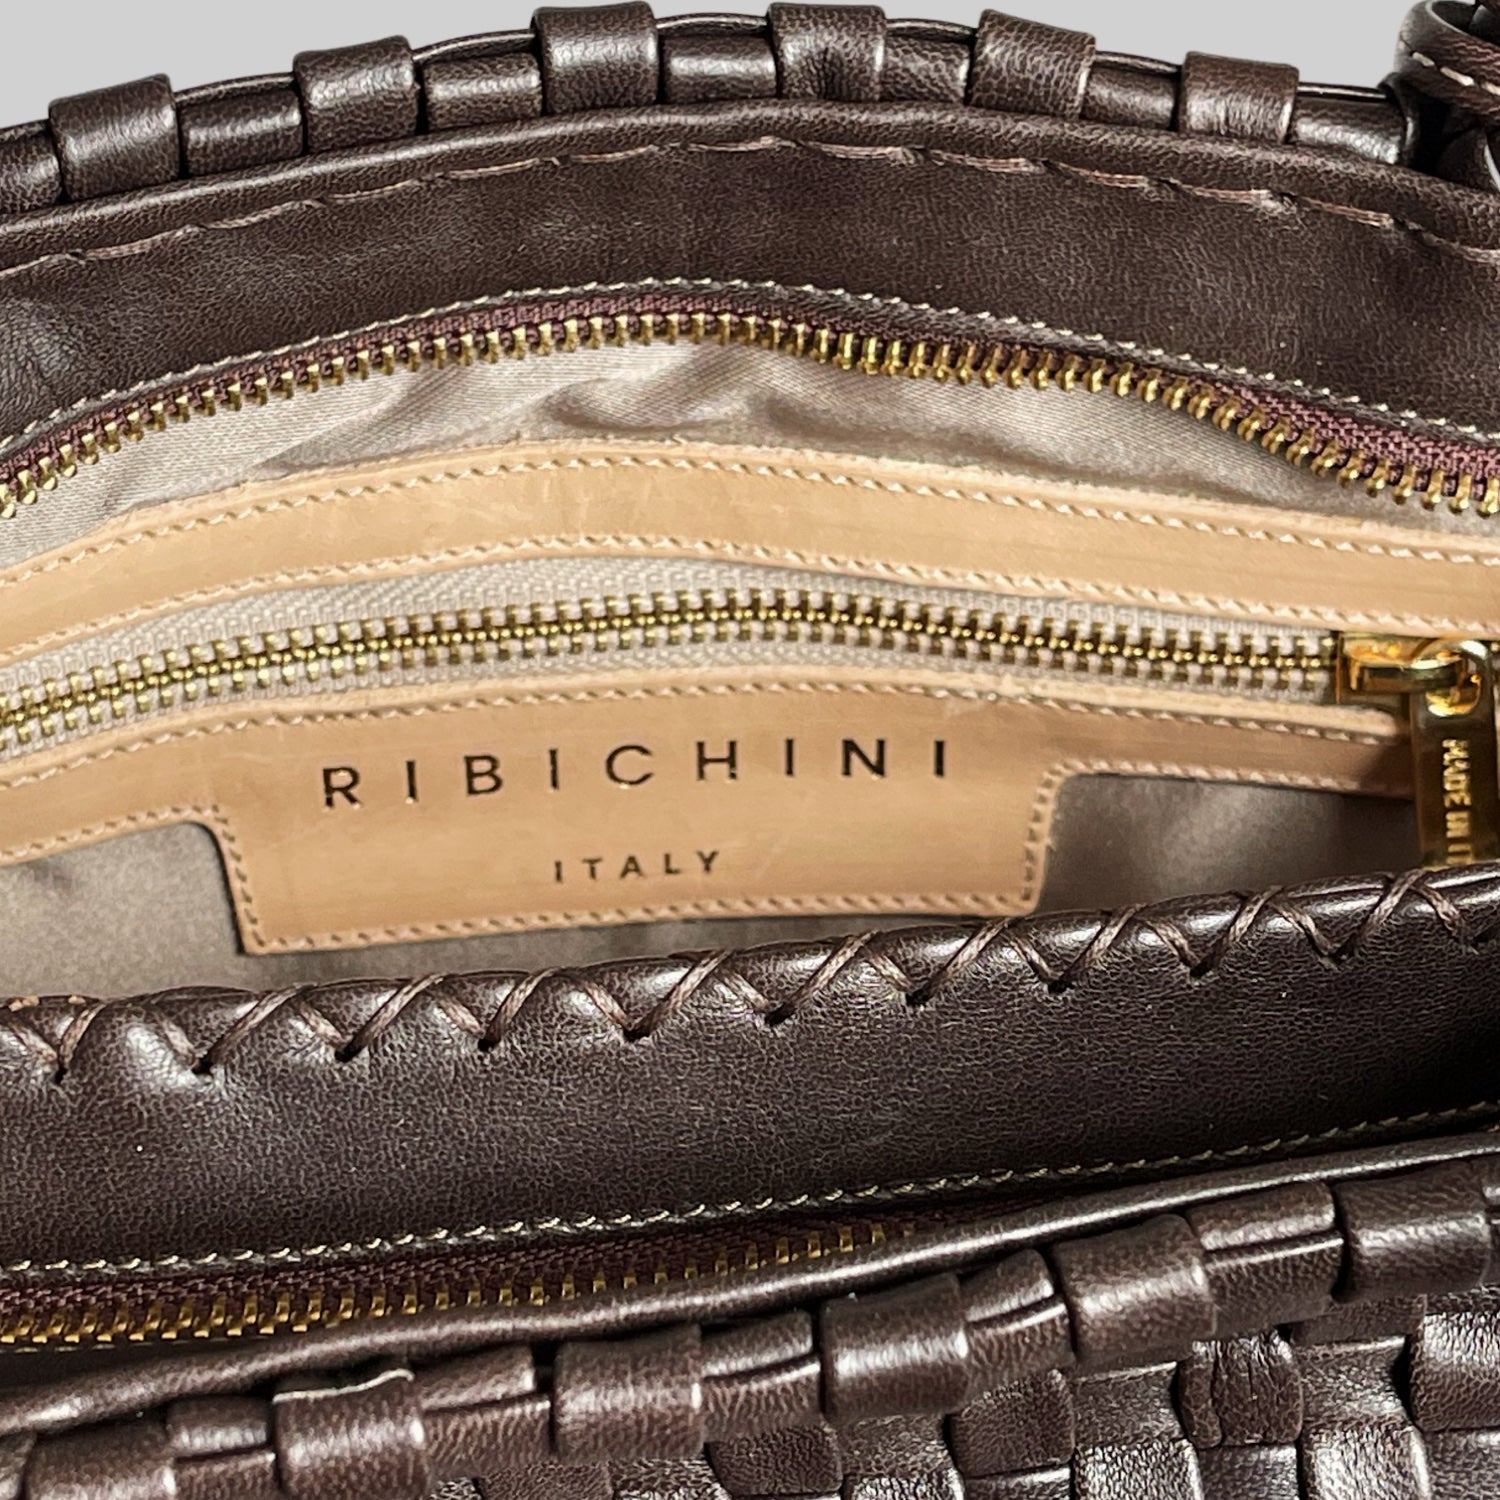 Ribichini Ginny-skinnvesken har en praktisk innvendig lomme designet for å organisere småting som nøkler, lommebok og telefon, slik at du enkelt kan få tilgang til dem.